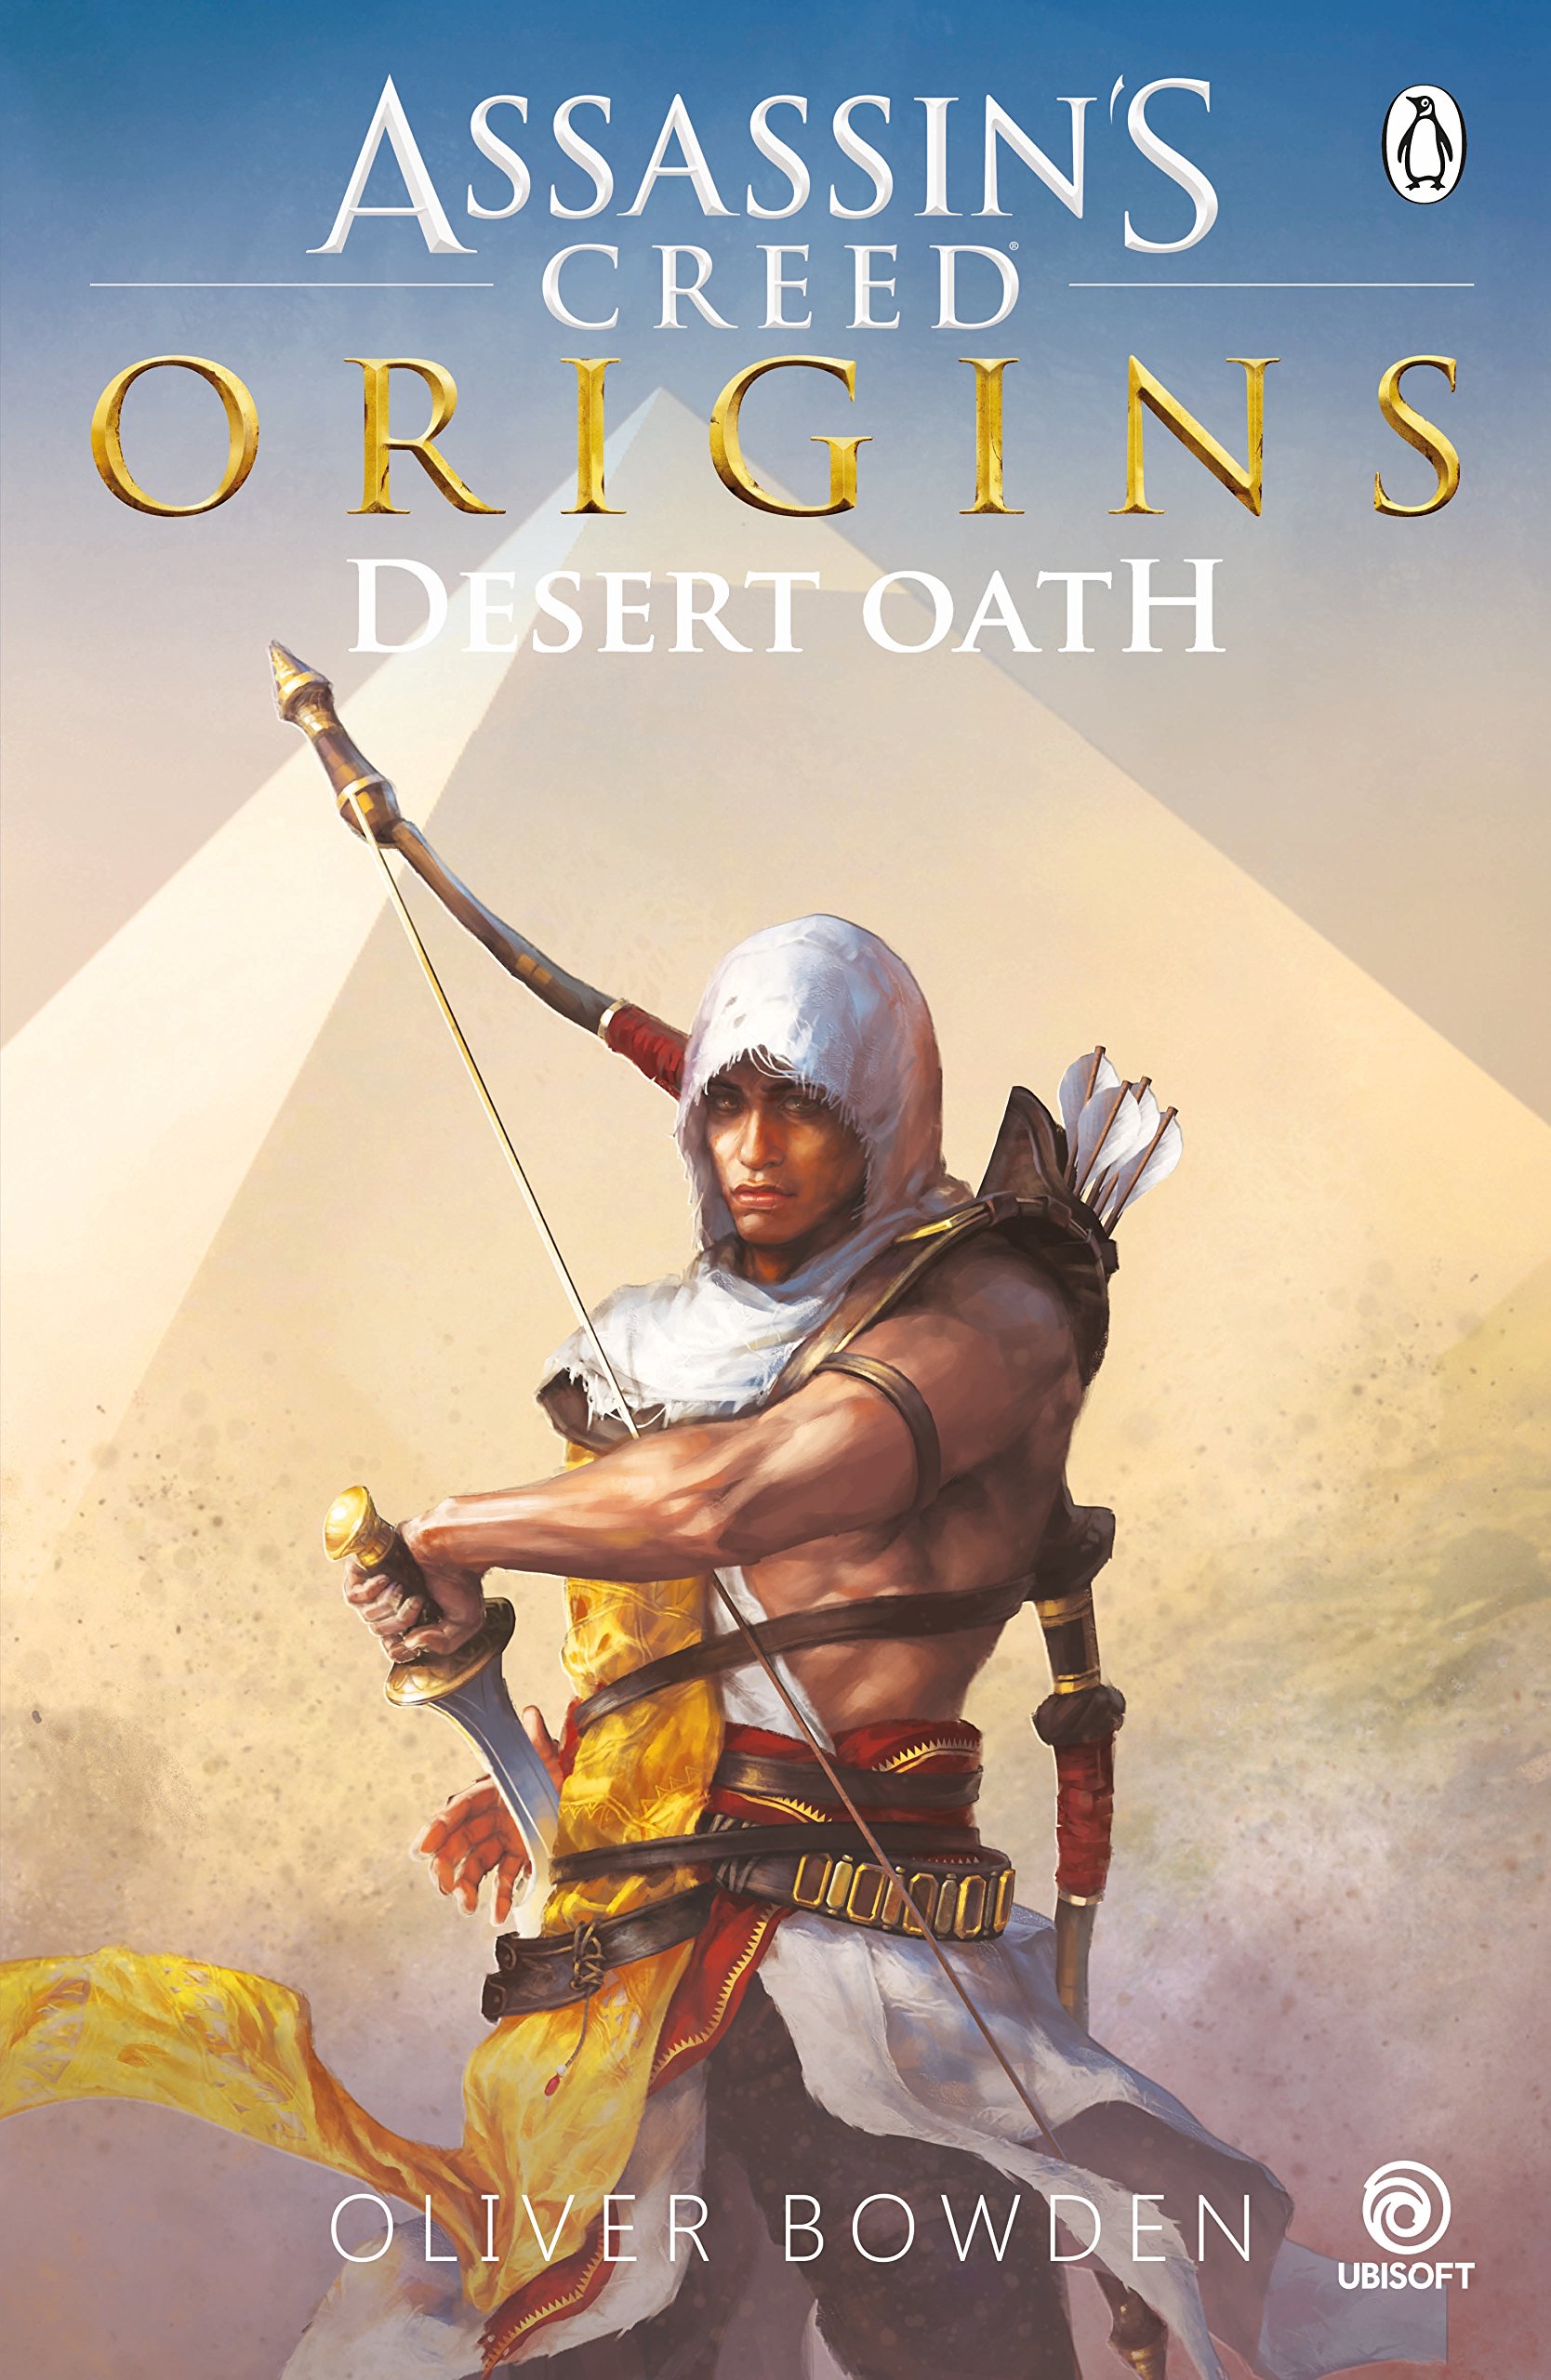 Assassins Creed Origins Guide Book Pdf